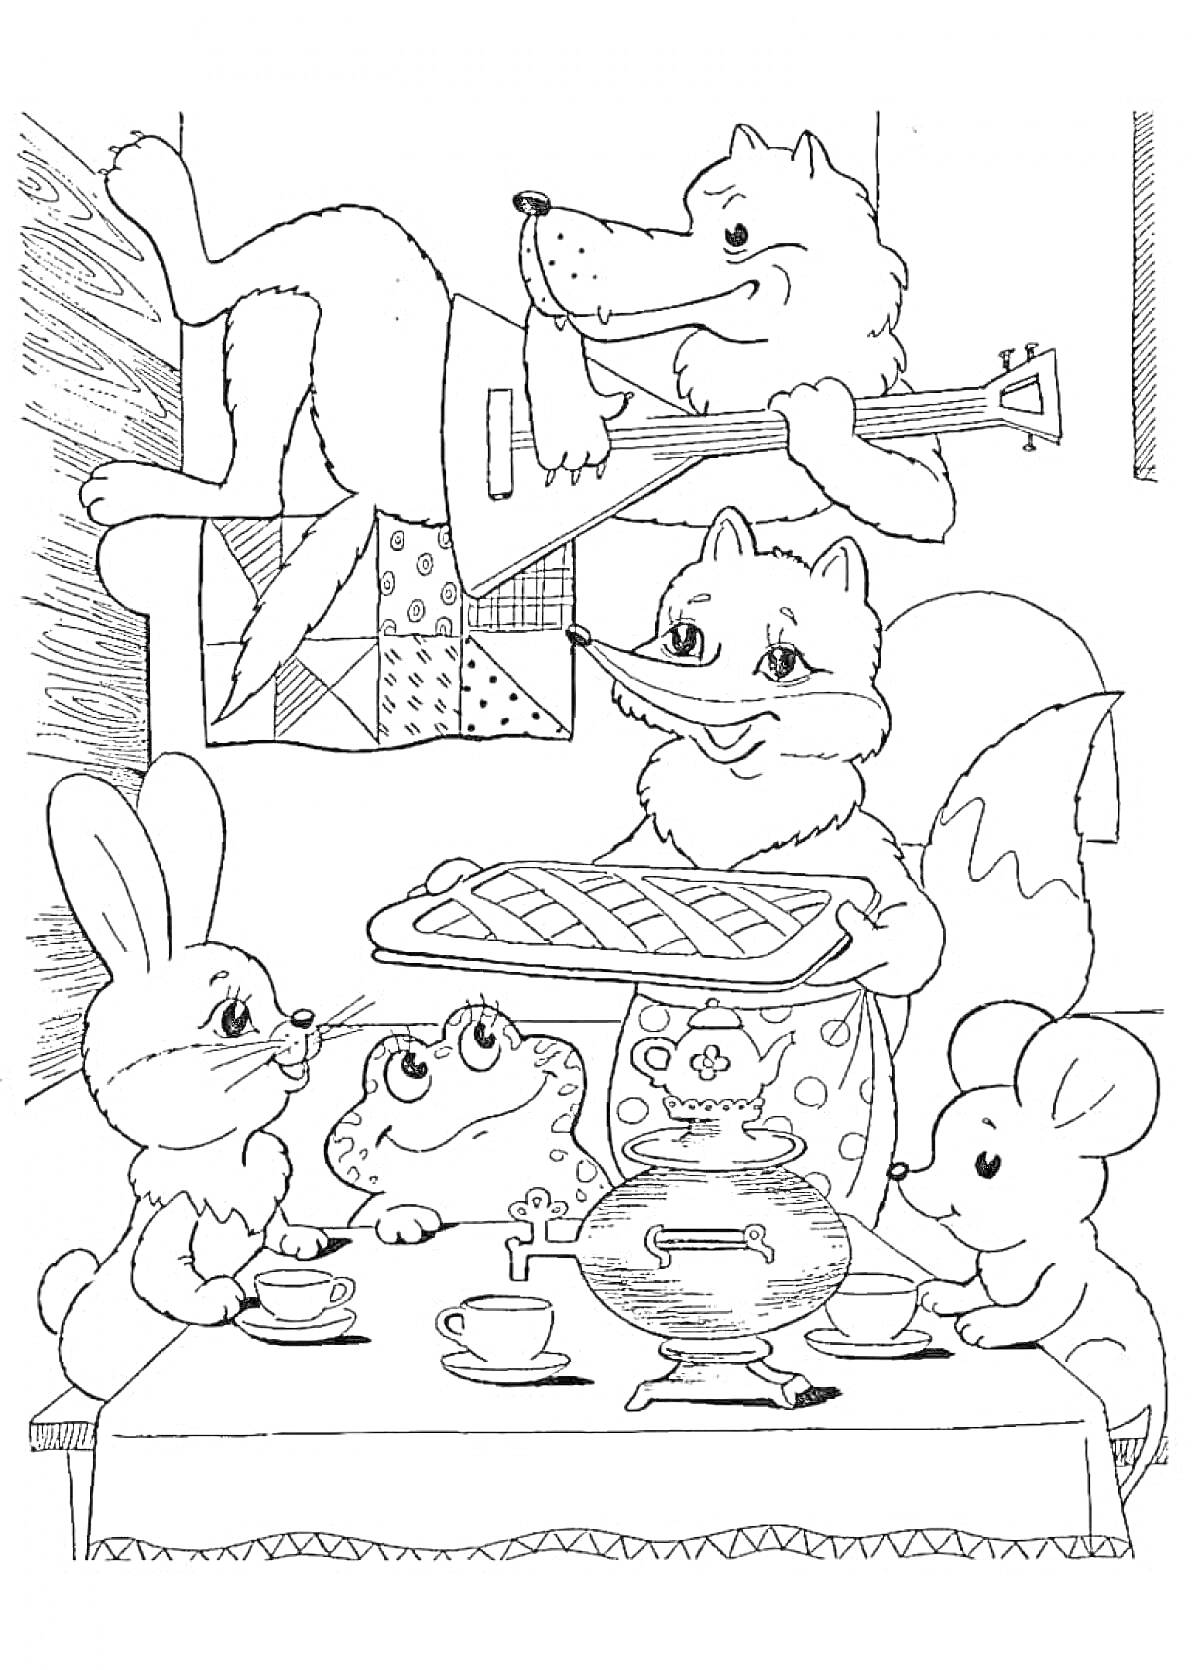 Раскраска В теремке: лиса с пирогом, волк с балалайкой, заяц, лягушка, мышь сидят за накрытым столом